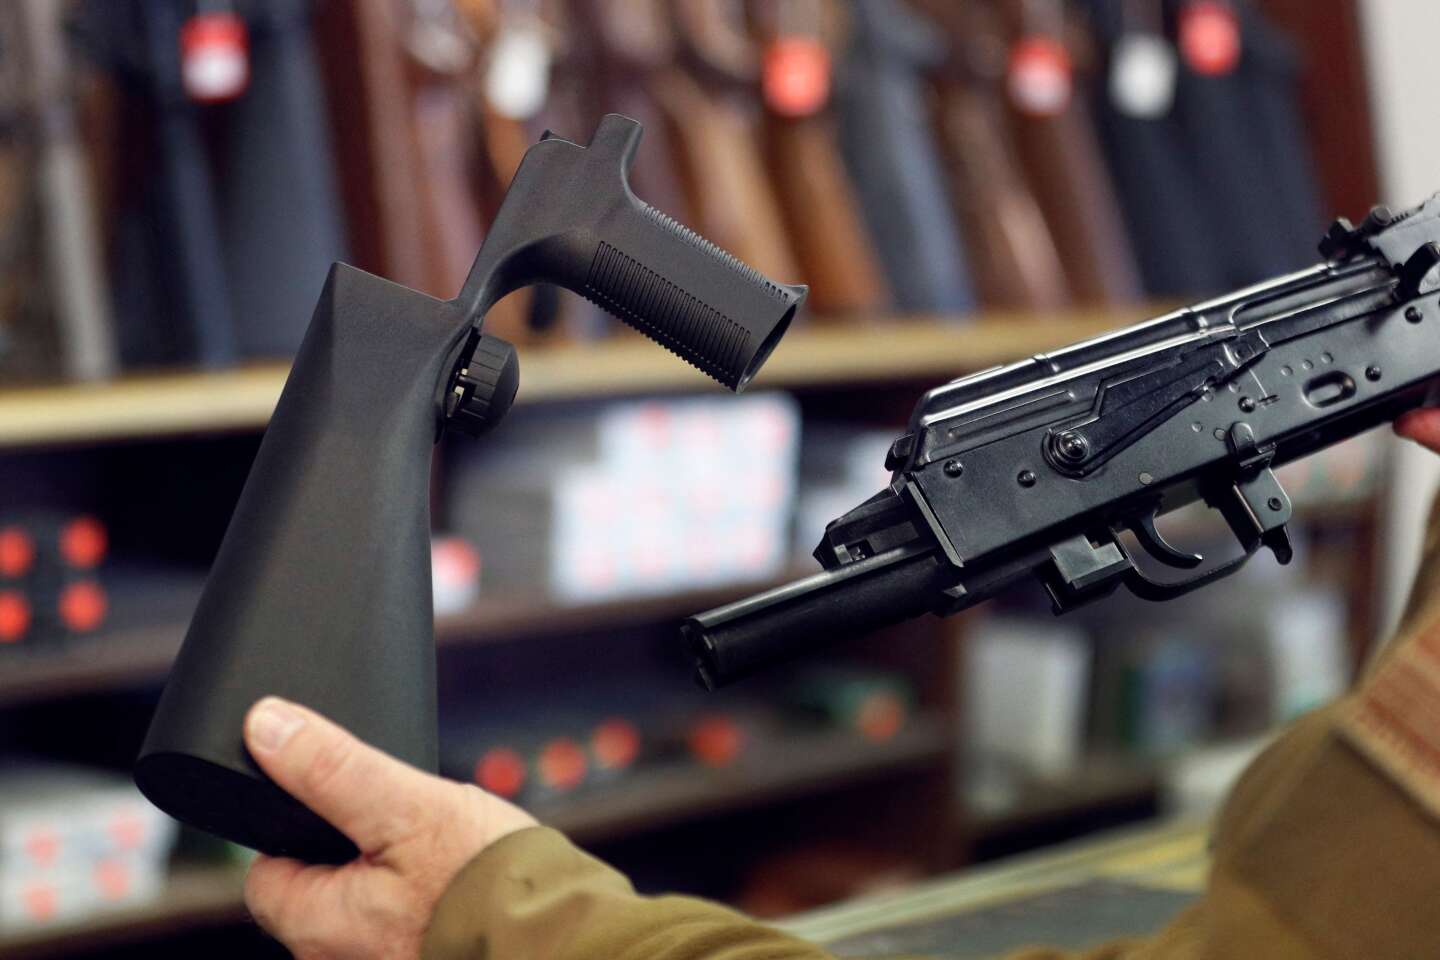 La Corte Suprema revoca il divieto sui titoli che trasformano i fucili in mitragliatrici